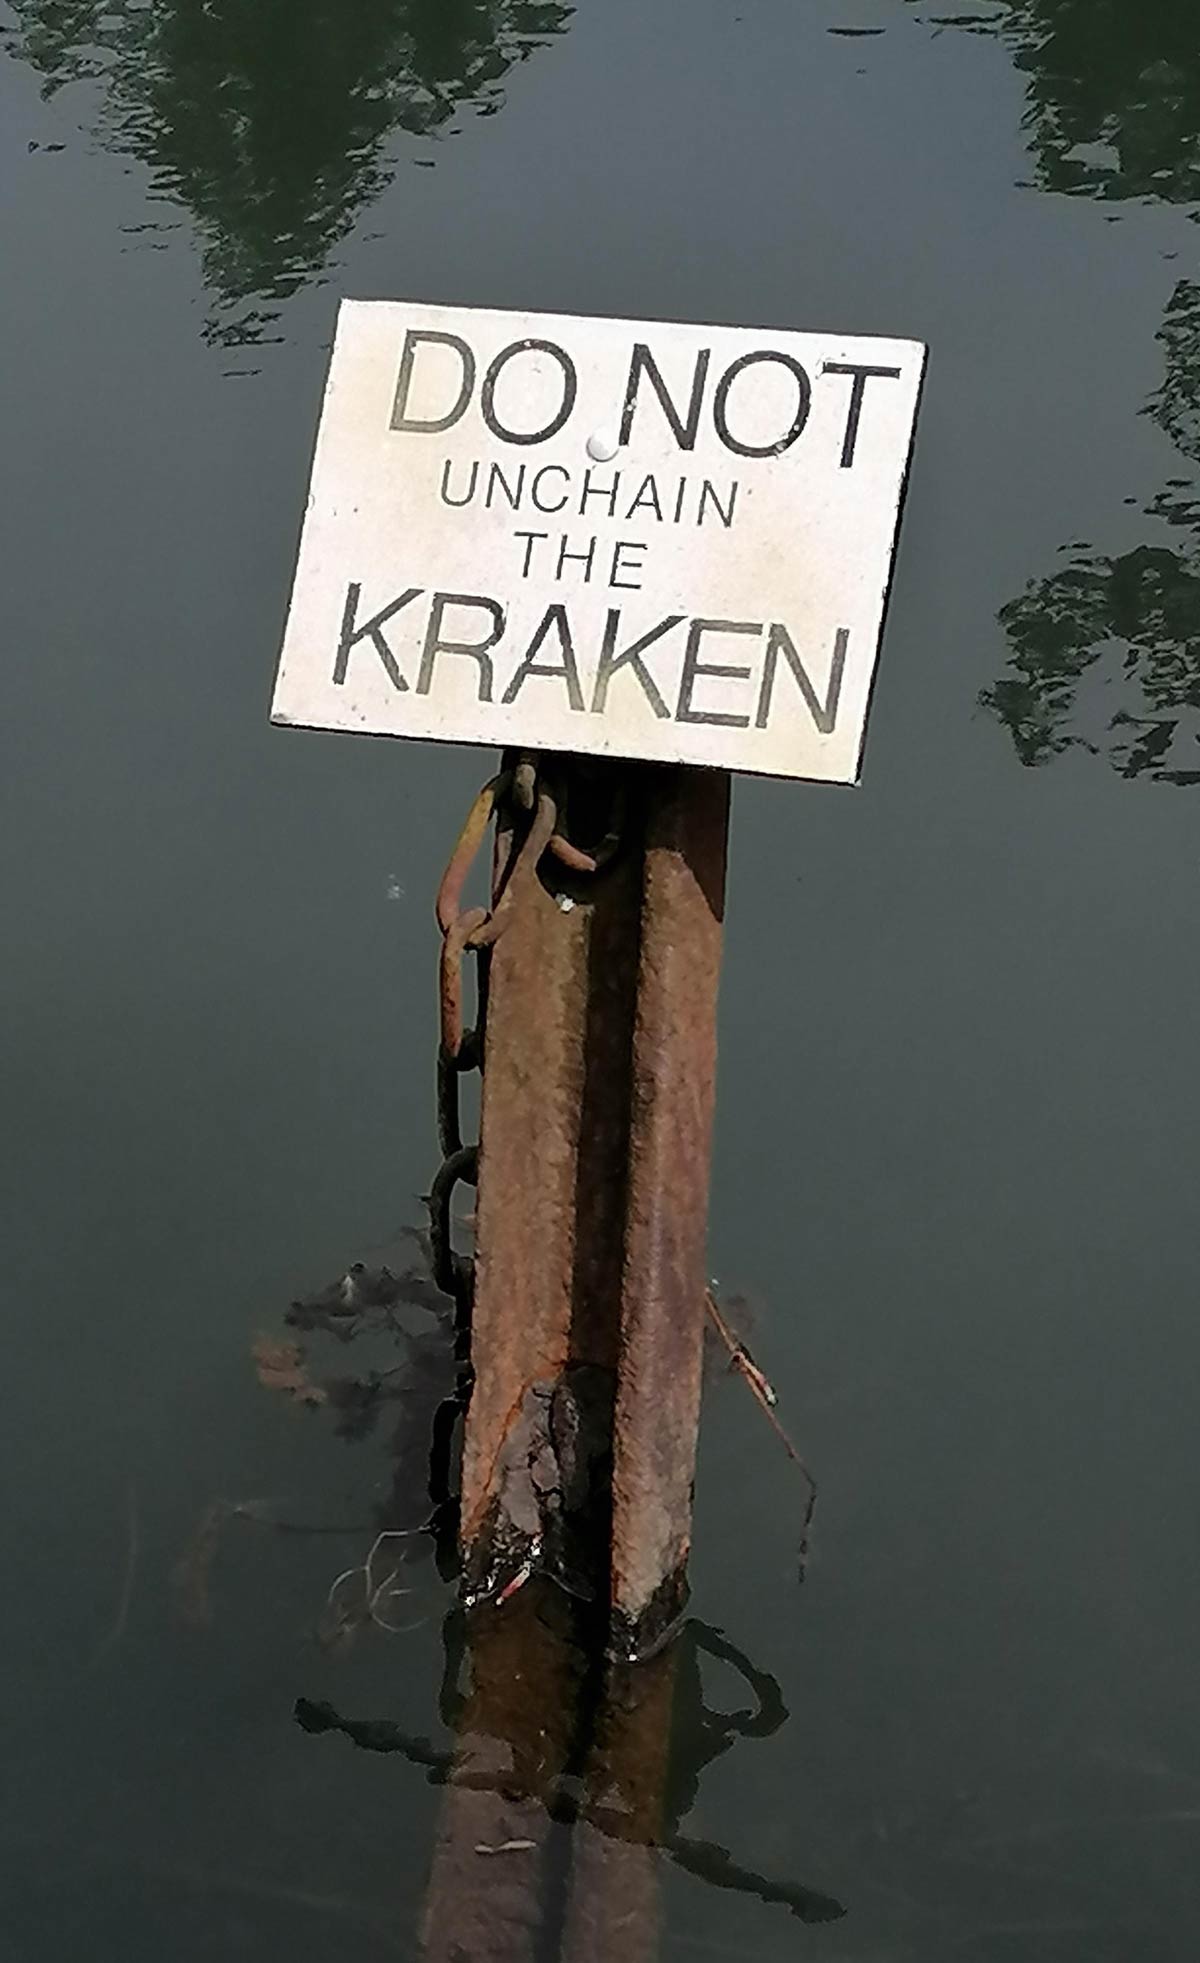 Saw this at my local lake